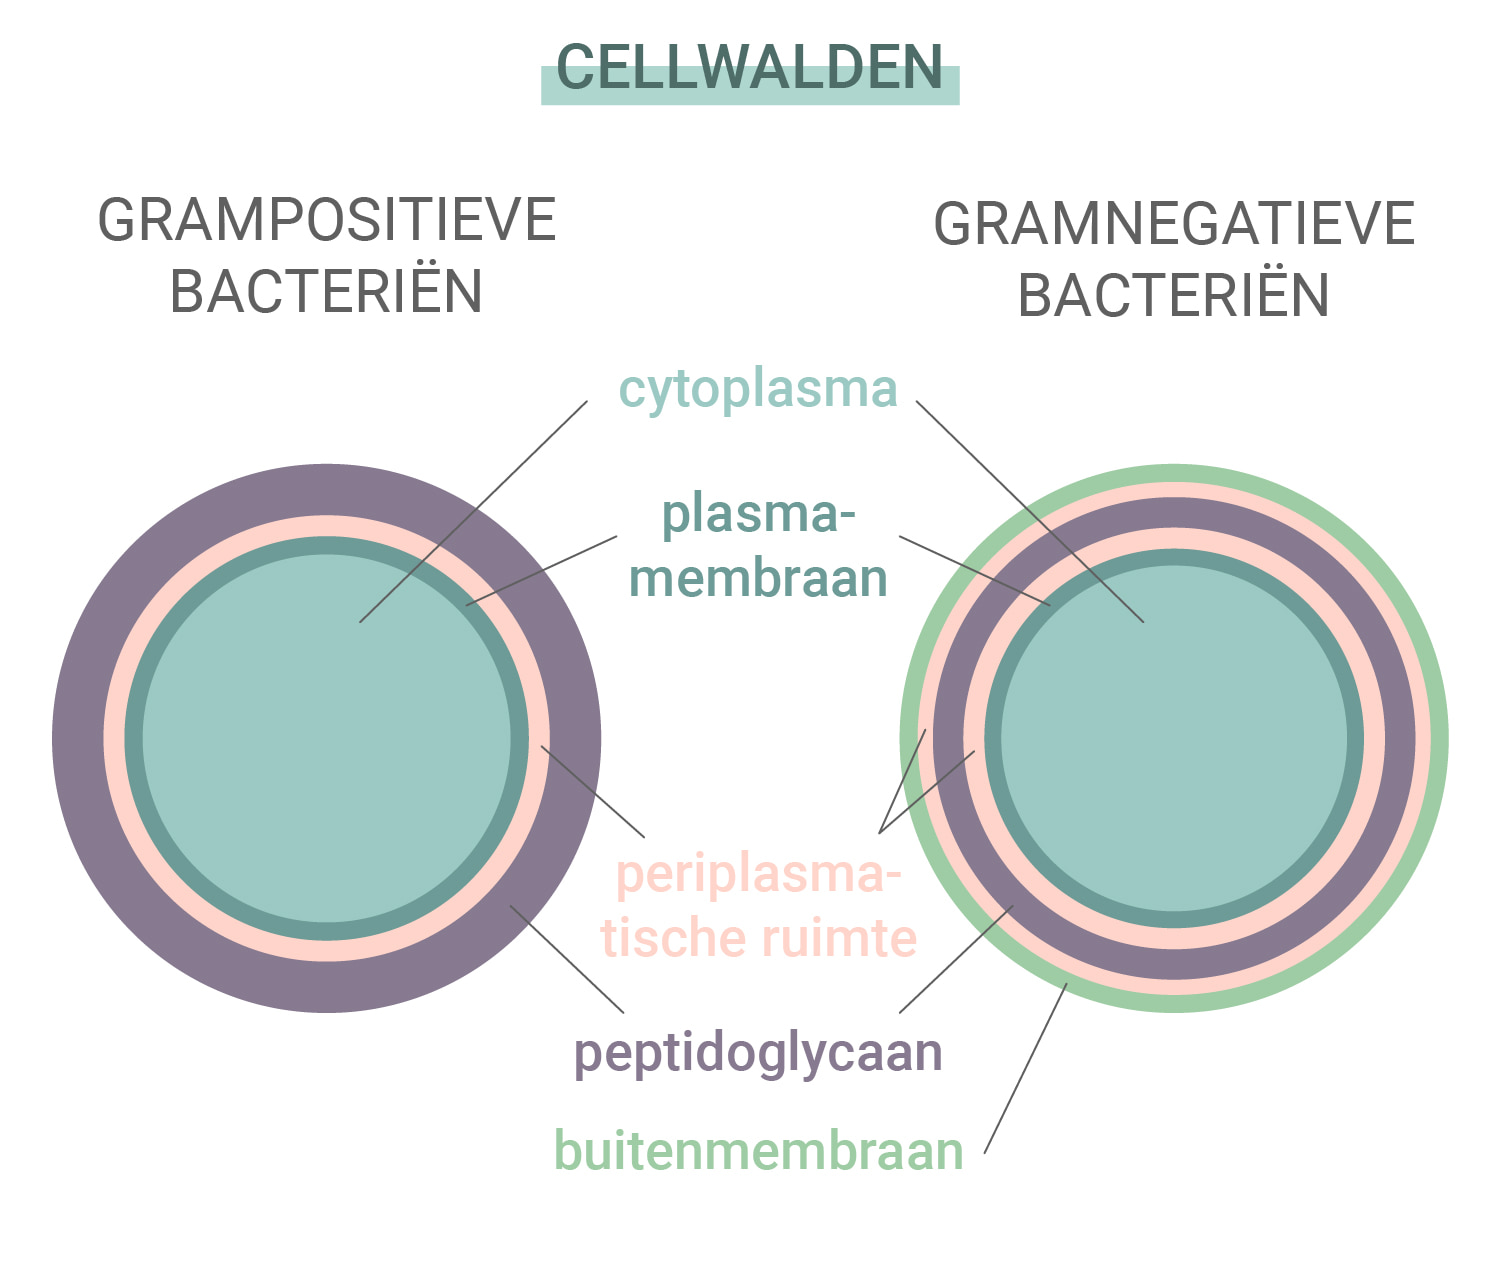 Grampositieve versus gramnegatieve bacteriën